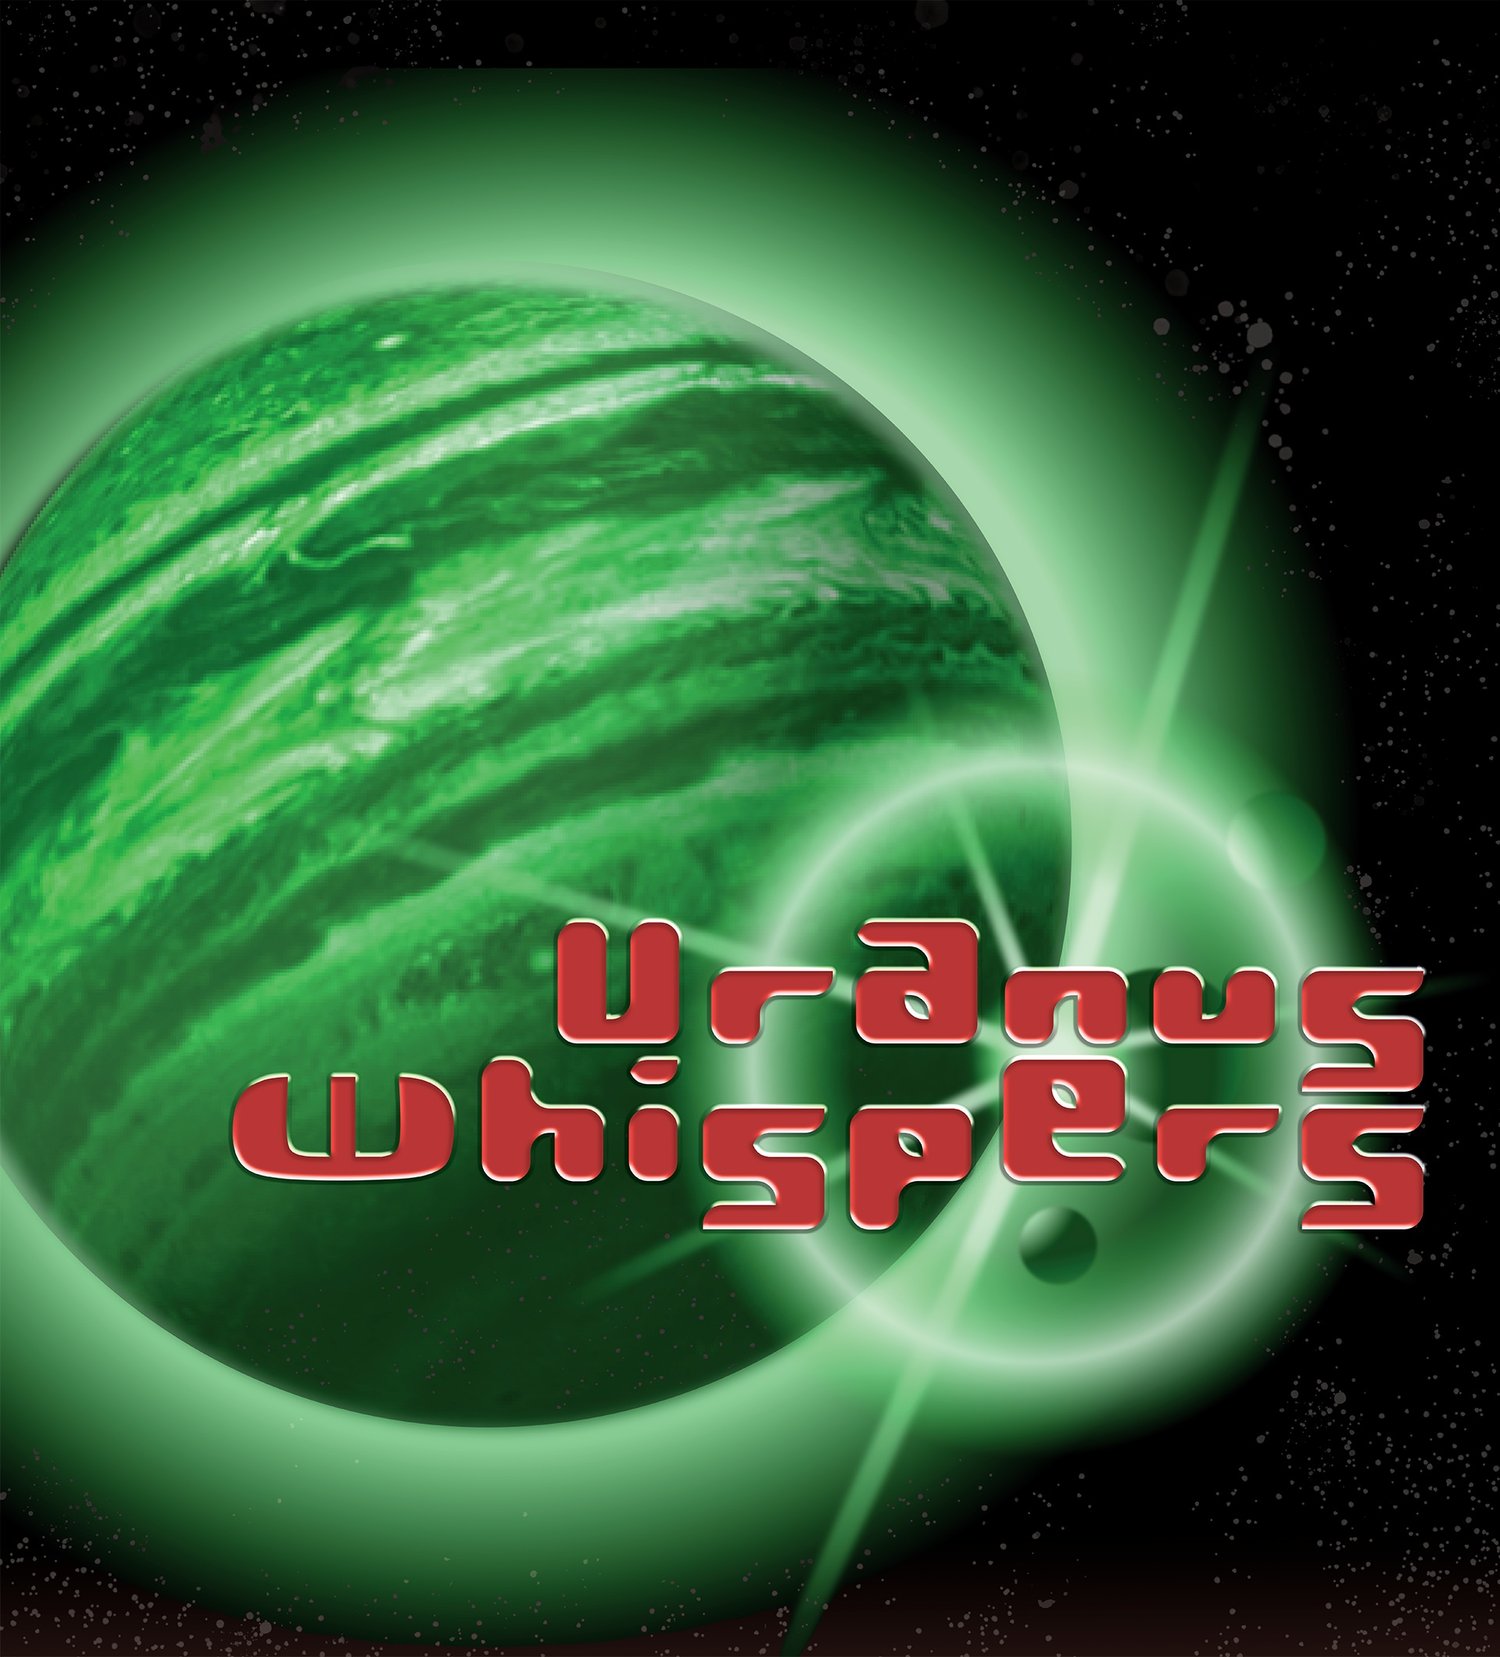 Uranus Whispers